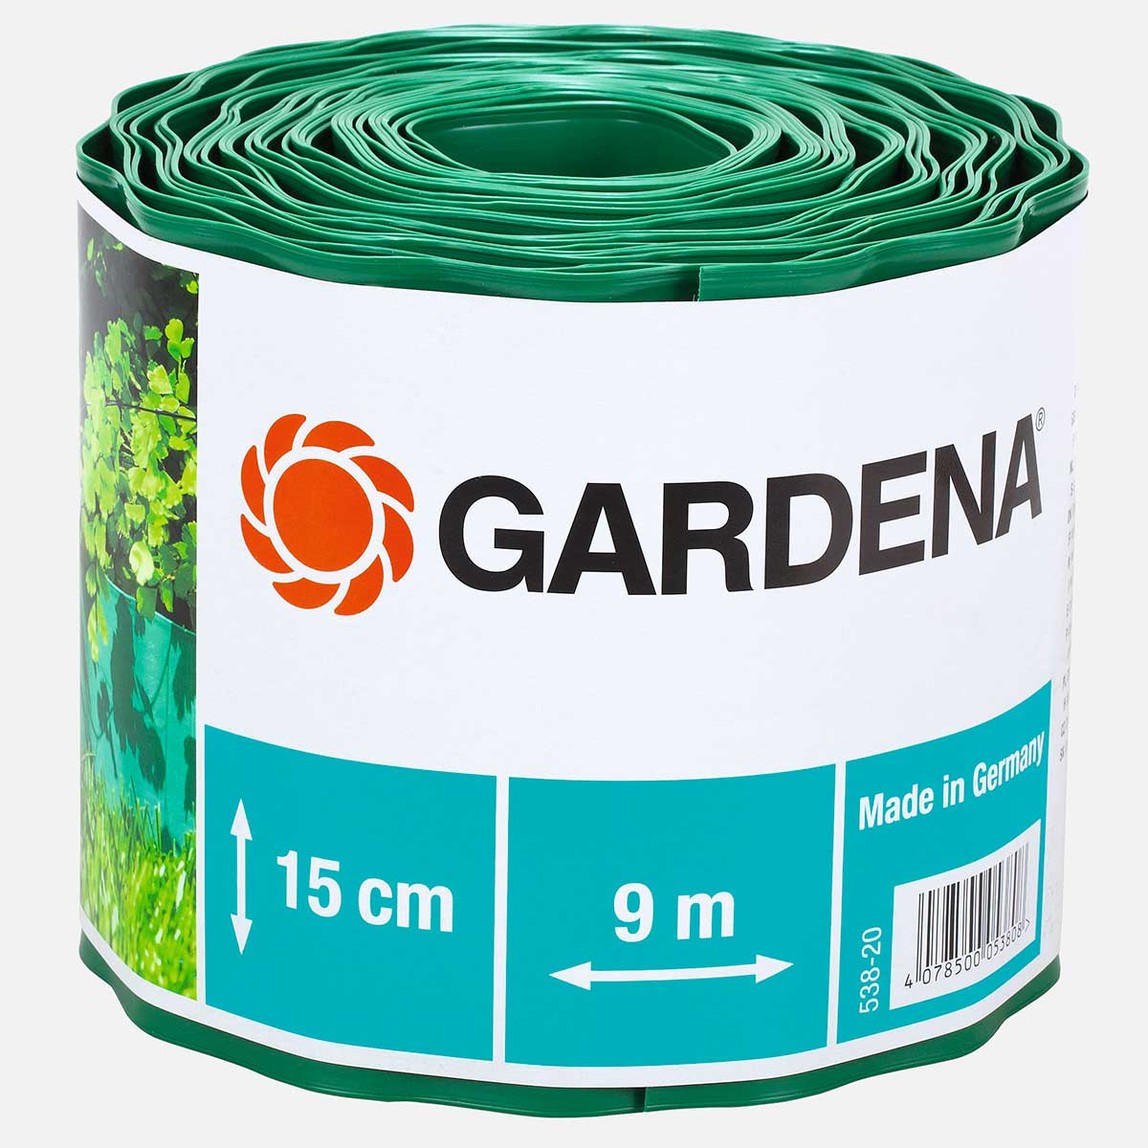    Gardena 538-20 15cm Çim Kenarlığı 9 m 